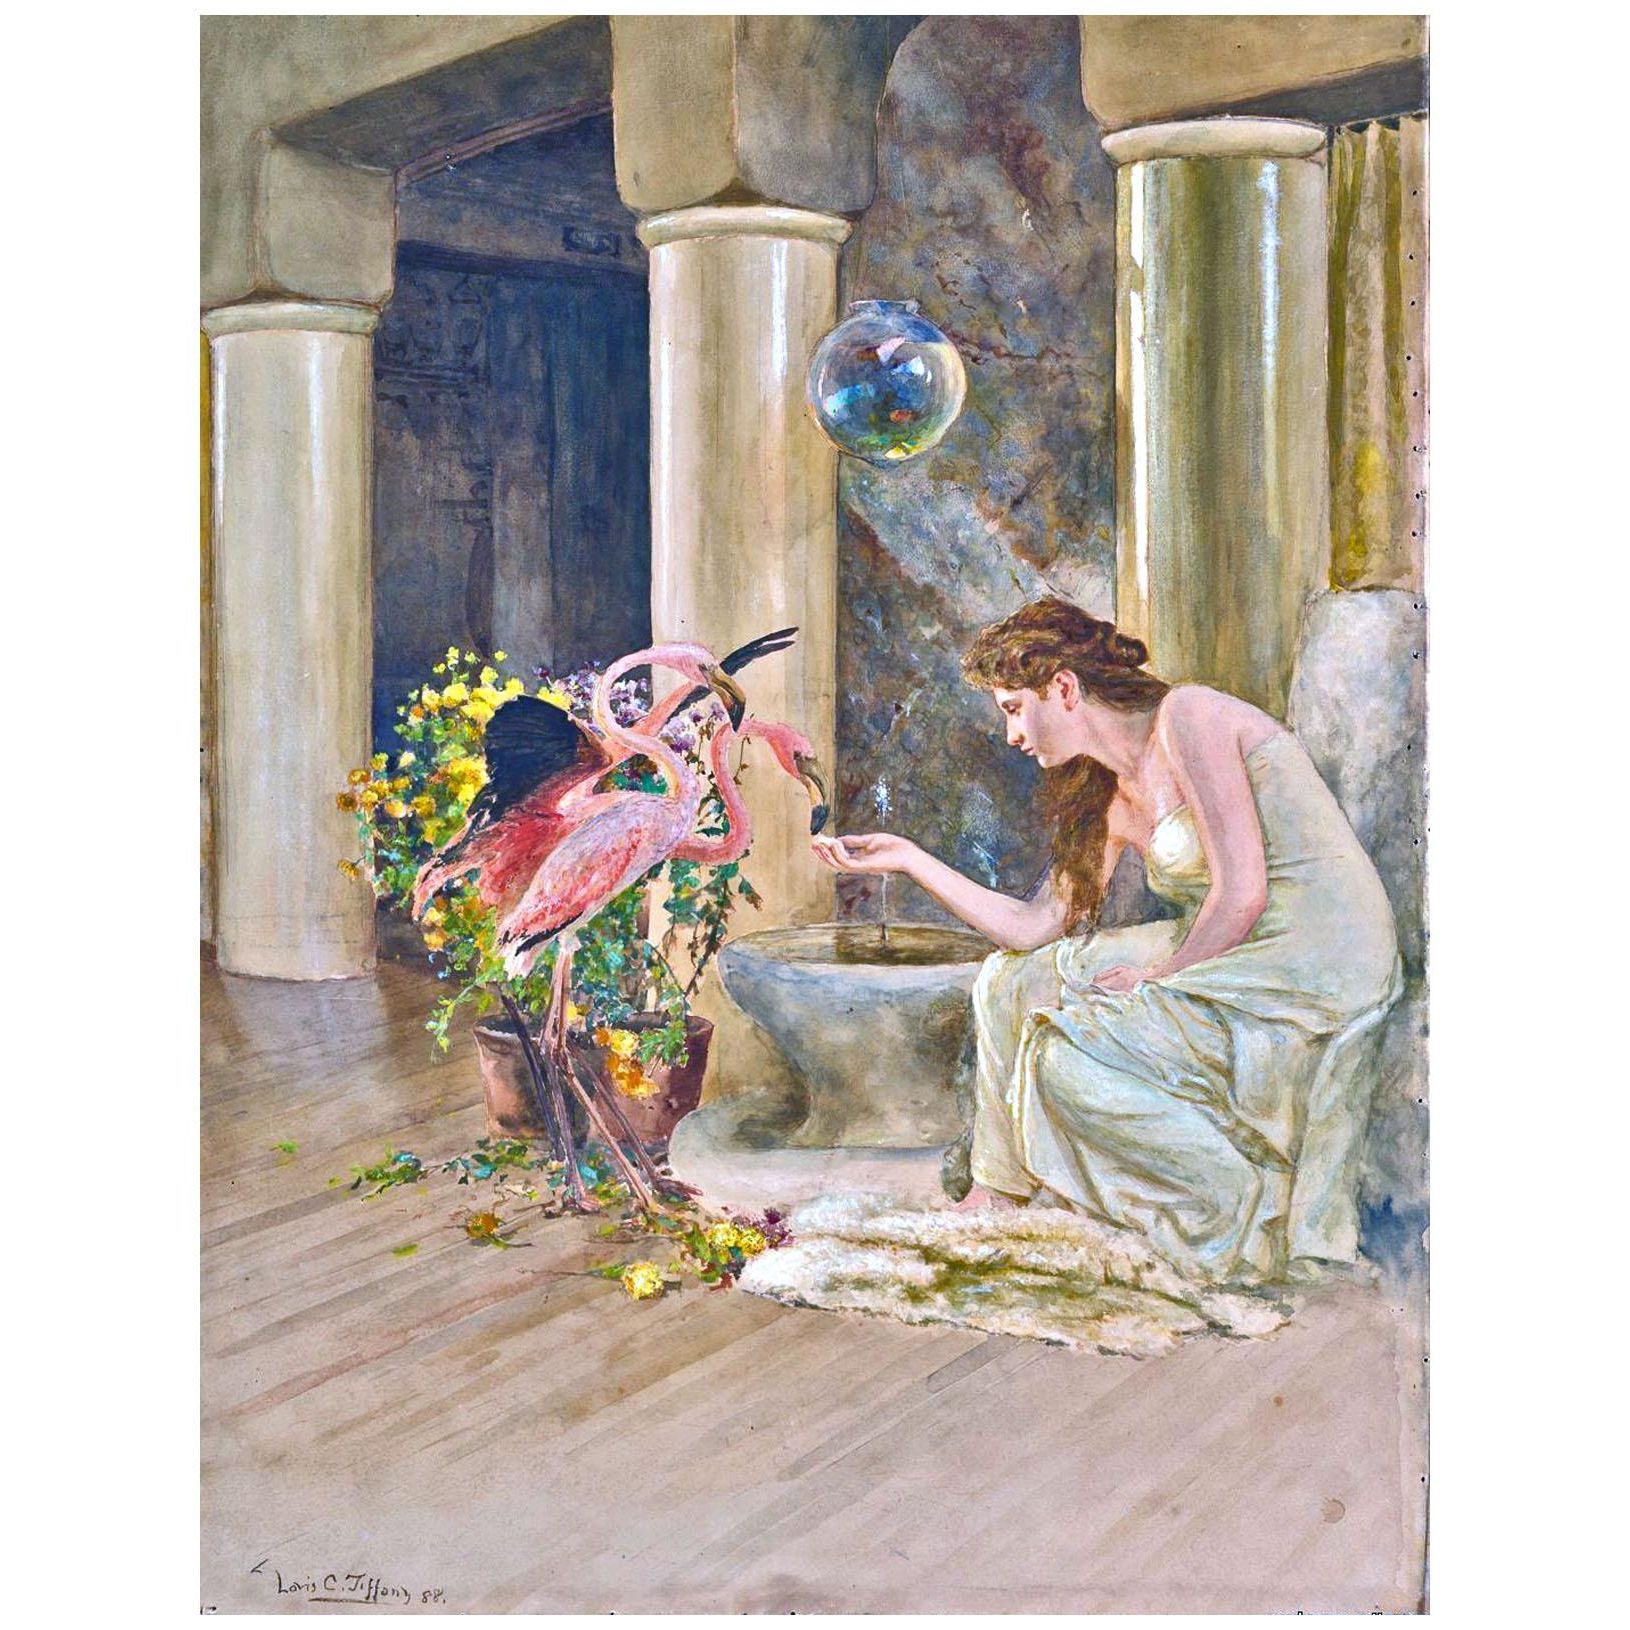 Louis Tiffany. Feeding the Flamingo. 1883. Haucelton Hall Gallery, NY